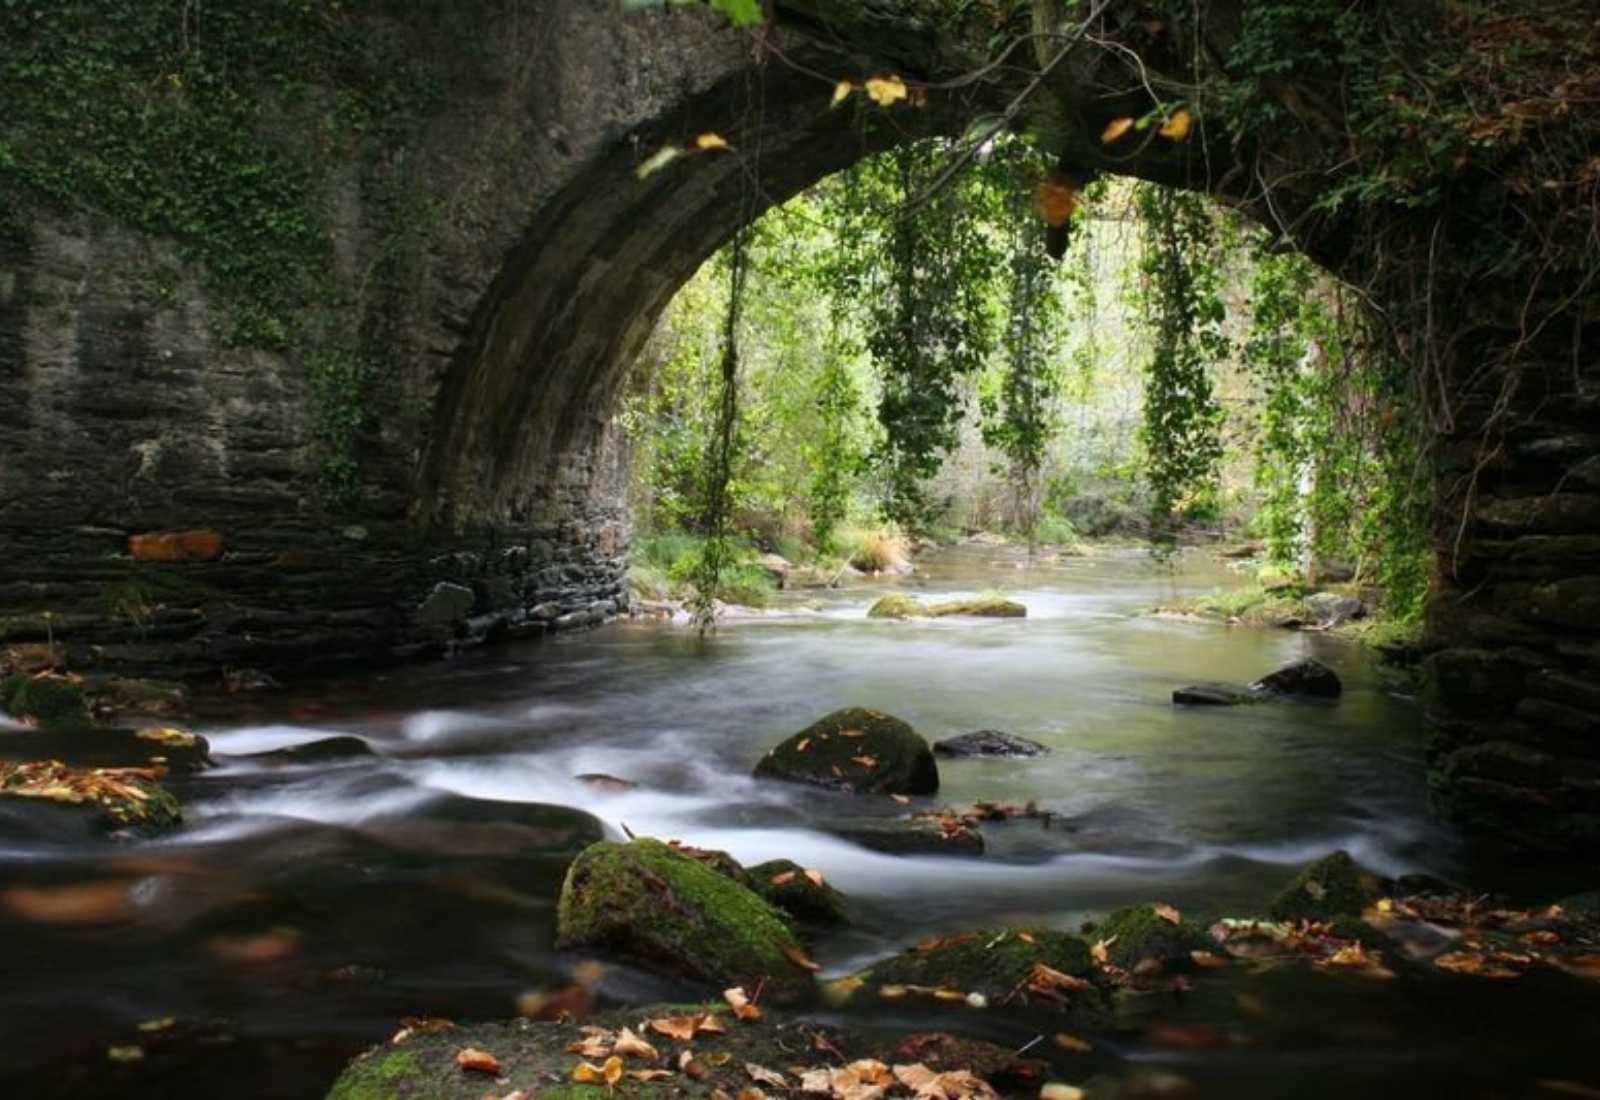 Puente de piedra sobre el río Sil